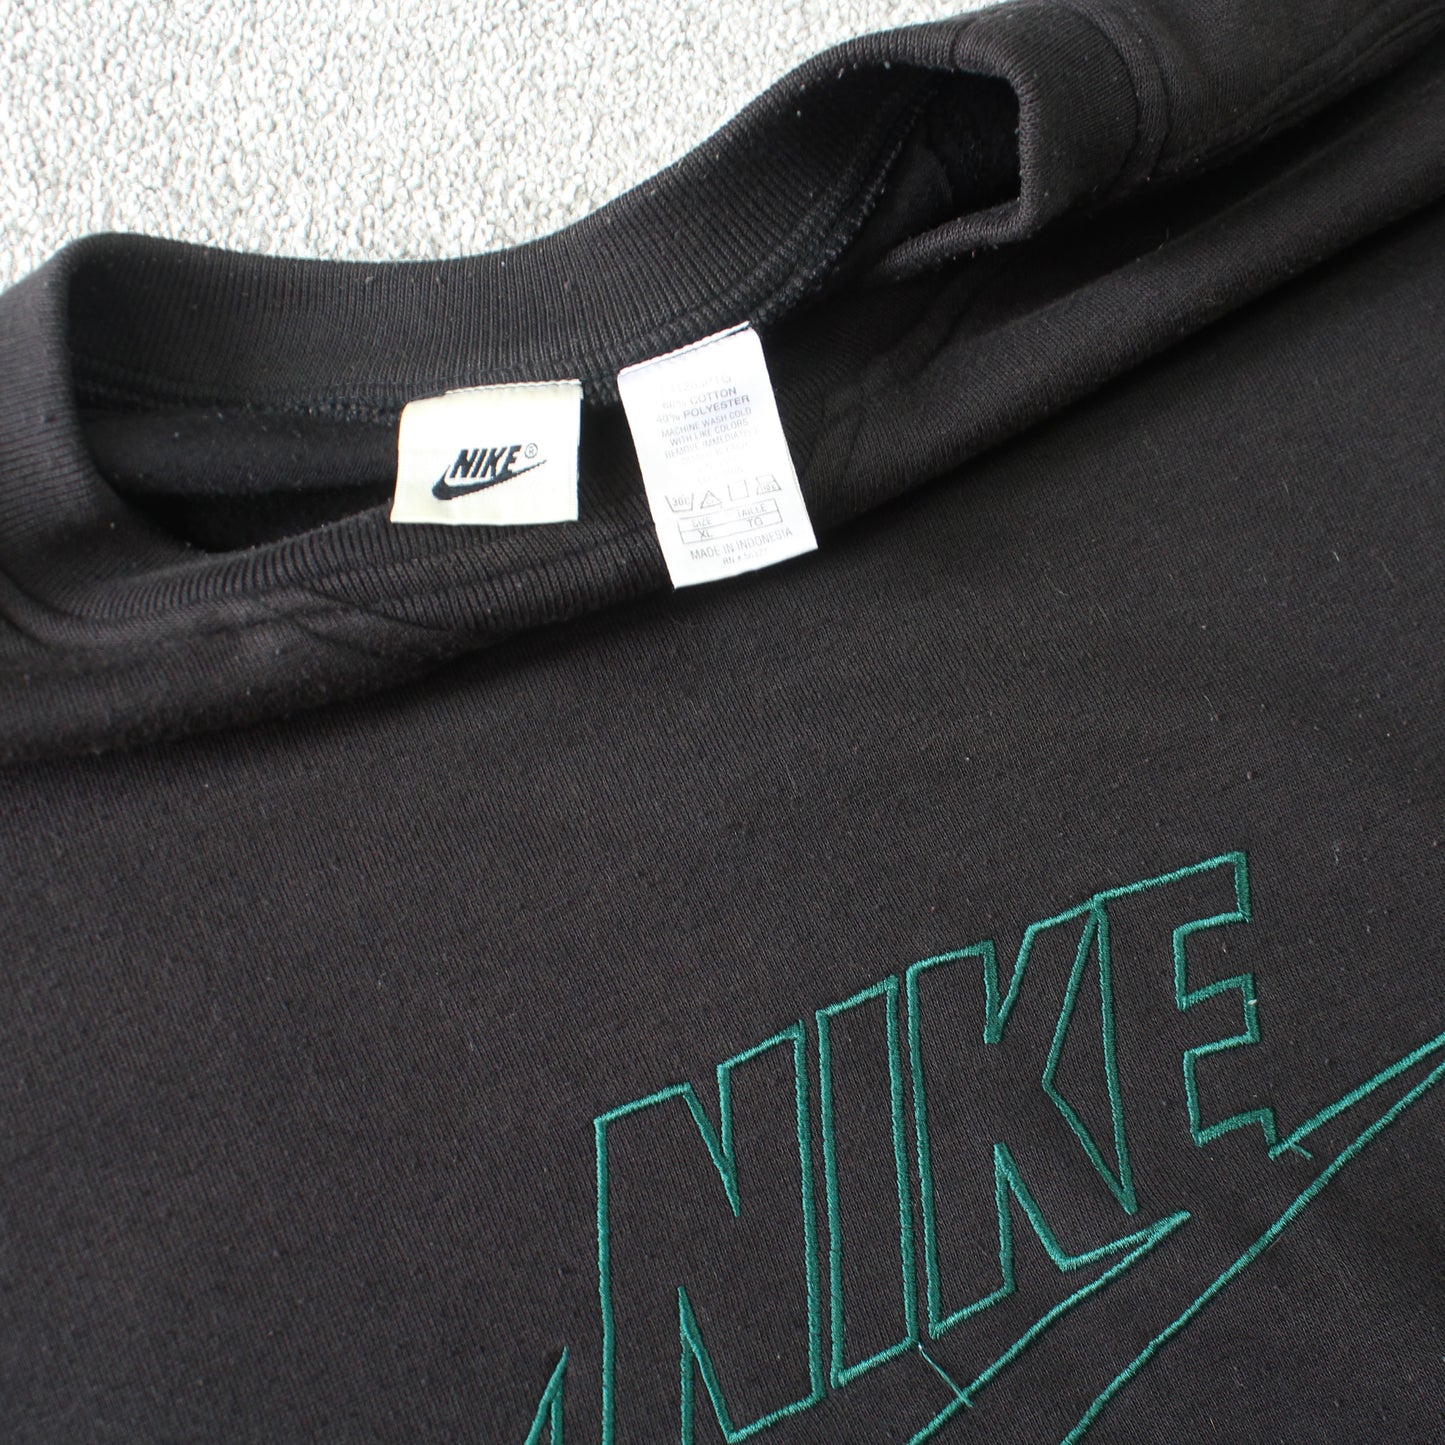 Vintage 1990s Rare Black Nike Sweatshirt - (Large)